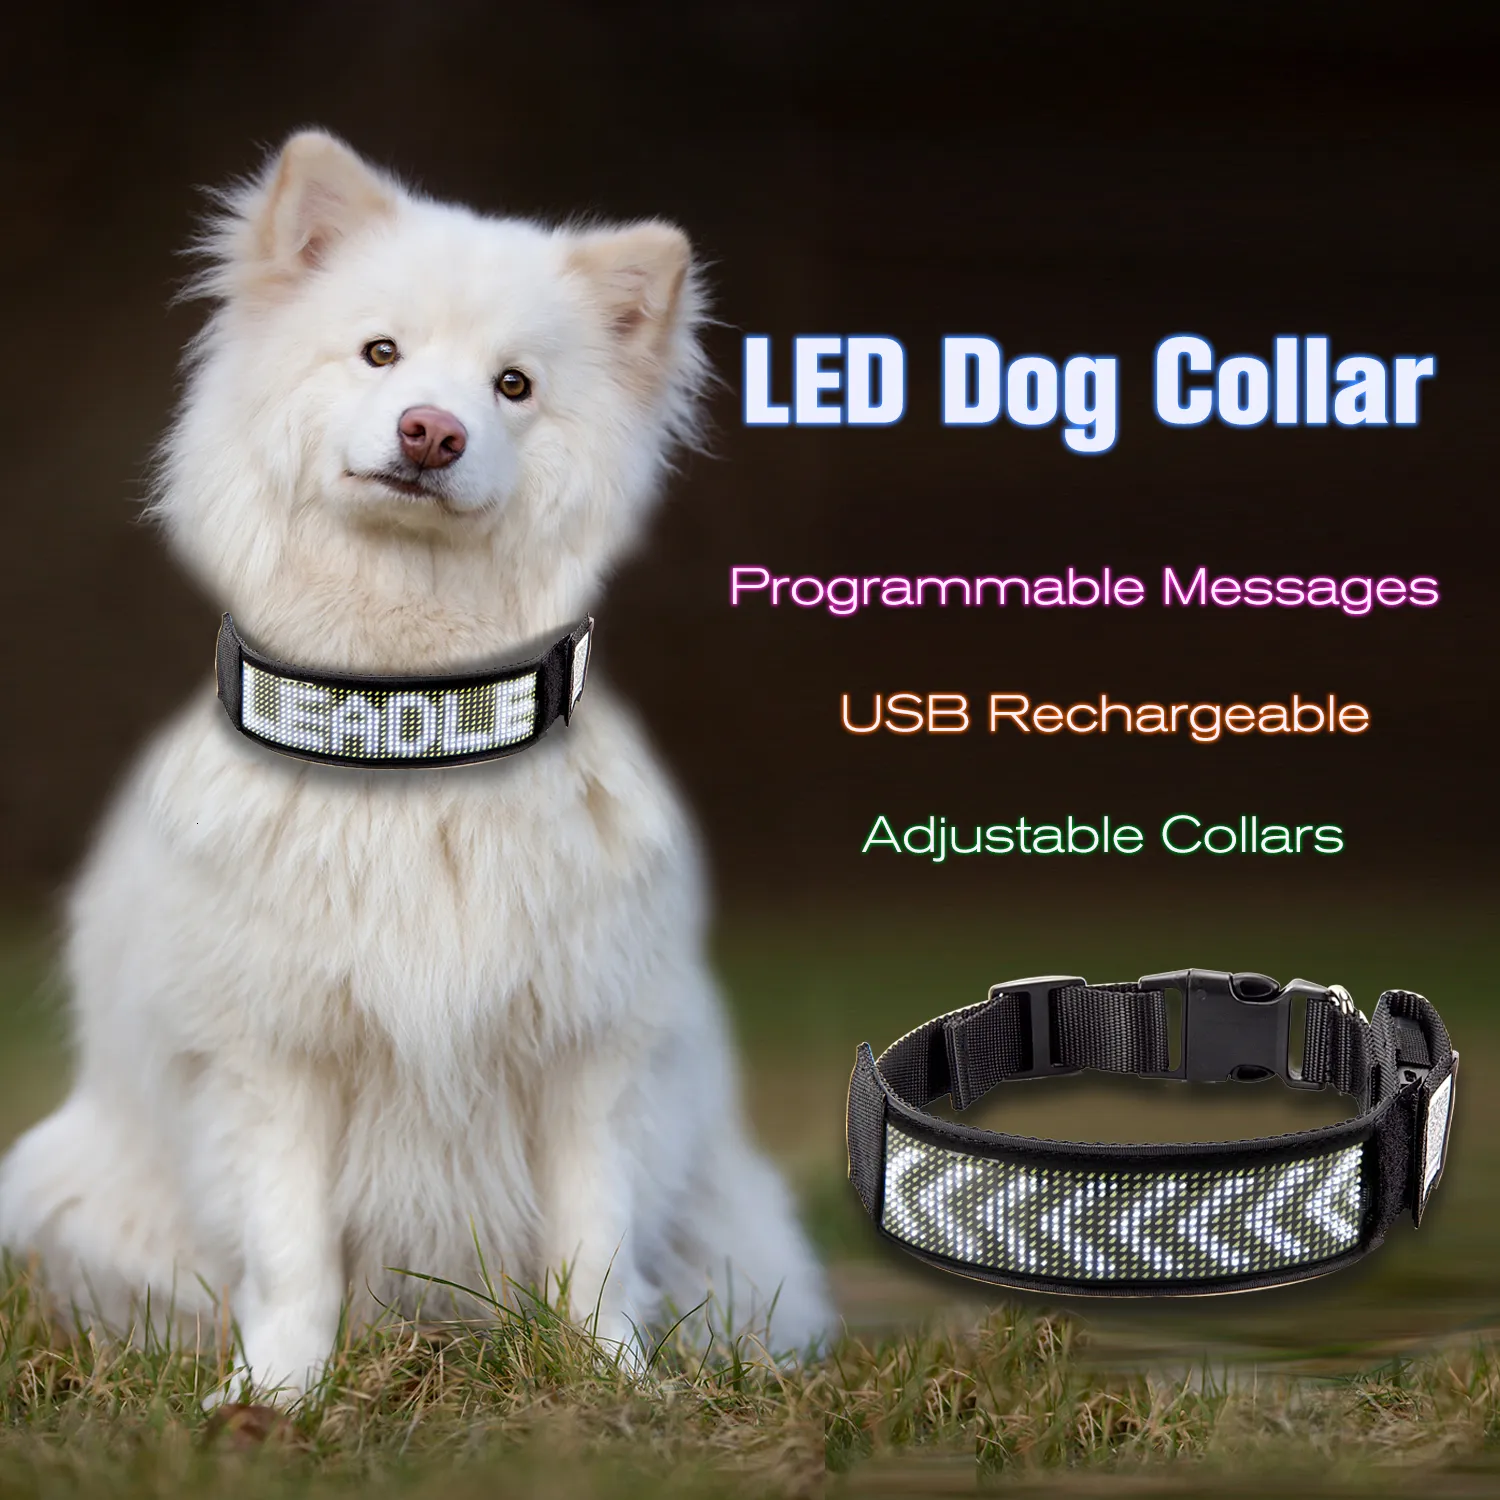 Colarinhos de cachorro colaras de colarinho de led de colarinho led de colarinho luminado LUZ Bluetooth Light Llumined Multicolored Personalized Text Graphics White 230816